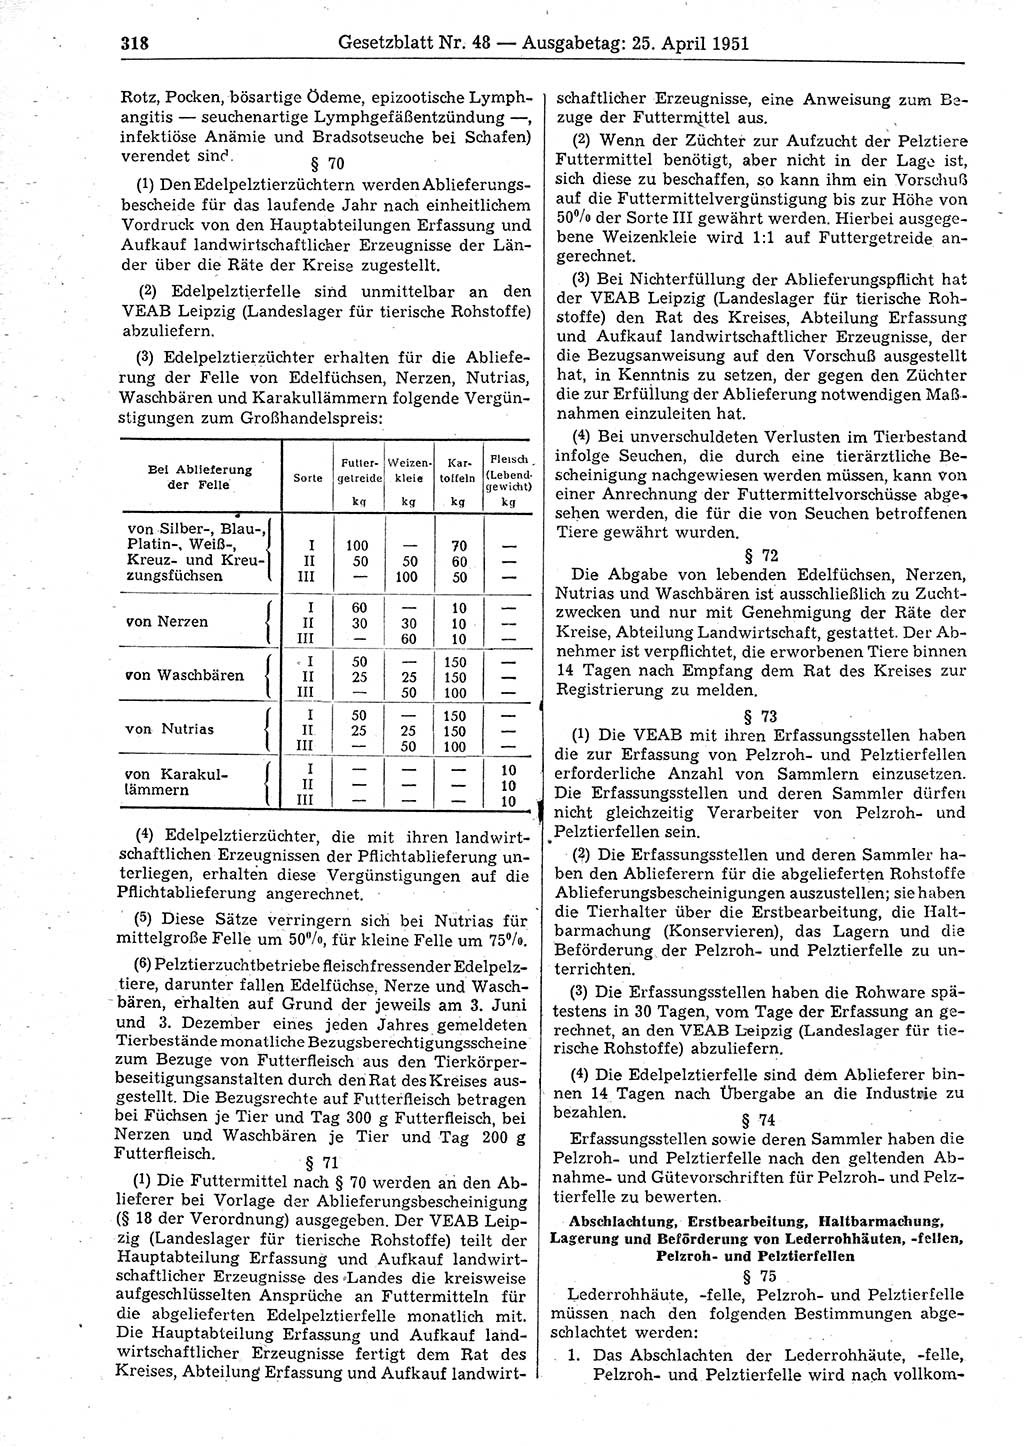 Gesetzblatt (GBl.) der Deutschen Demokratischen Republik (DDR) 1951, Seite 318 (GBl. DDR 1951, S. 318)